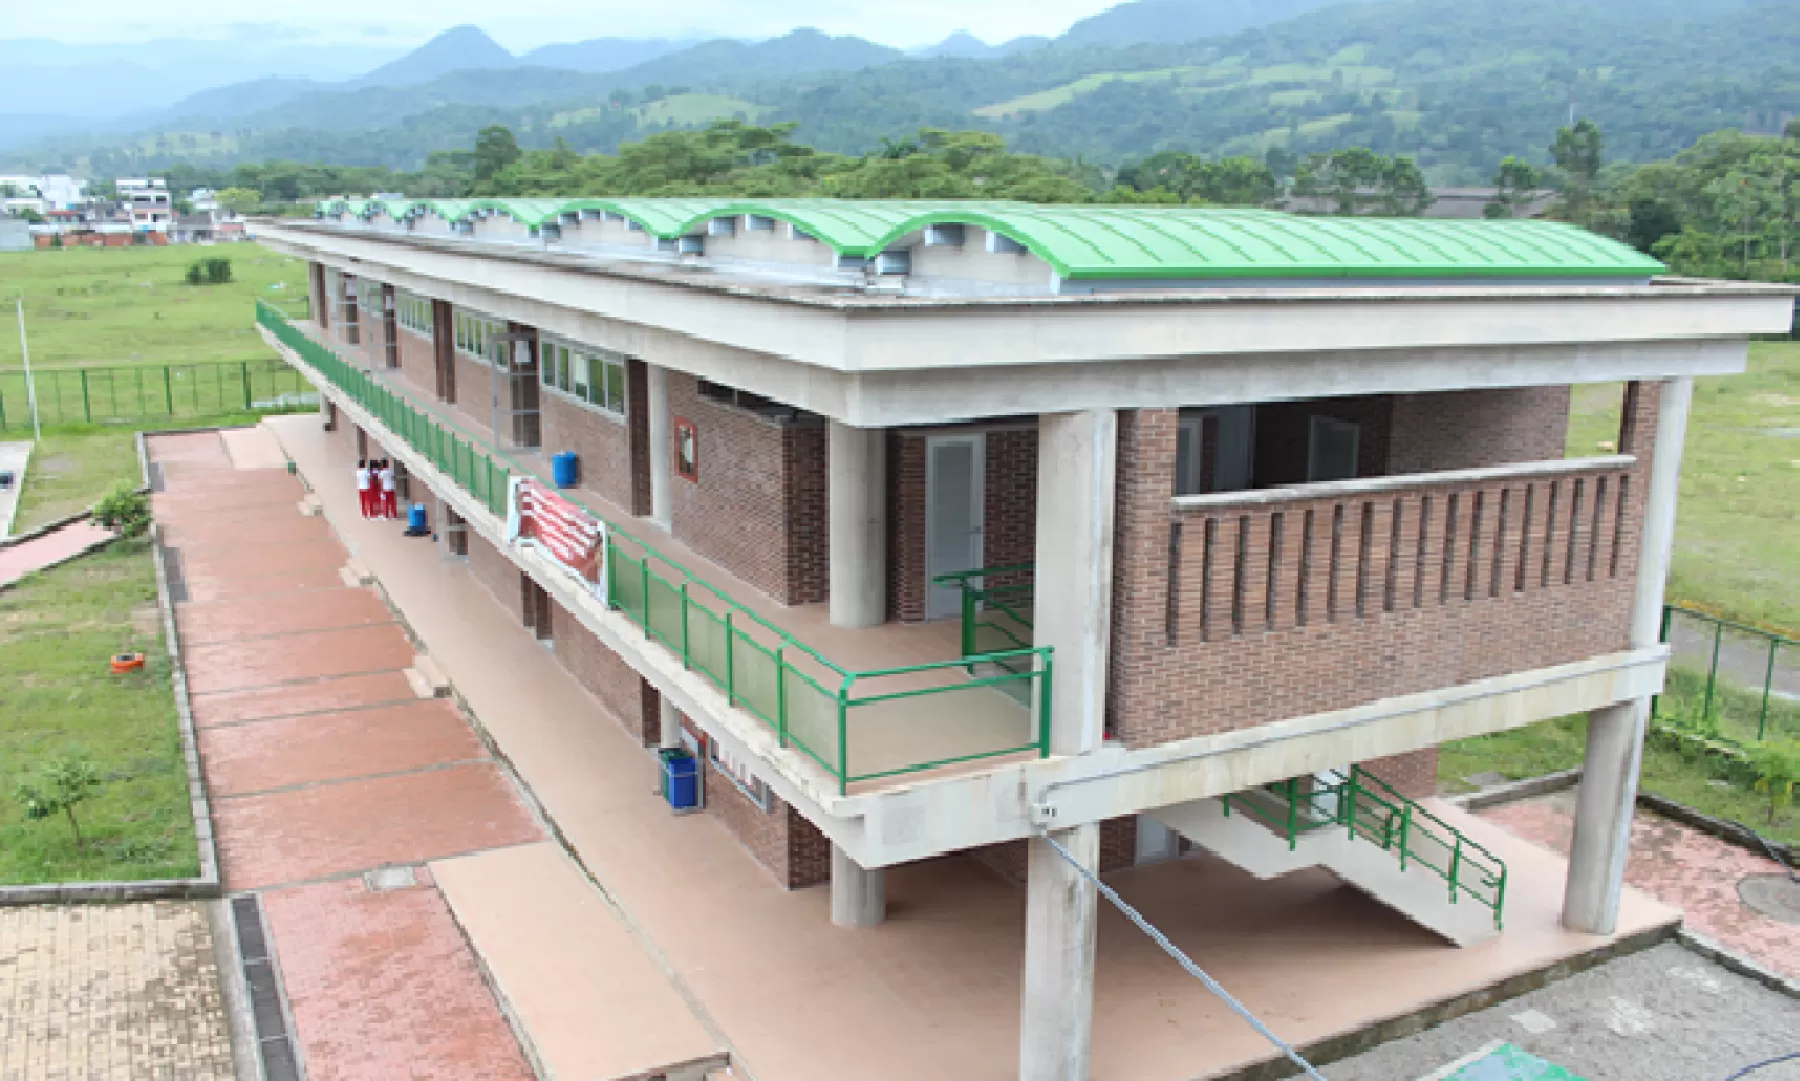 Alcaldía informa que hay cupos suficientes en 18 instituciones educativas oficiales de Villavicencio, destinados para quienes deseen ingresar a estudiar en la jornada nocturna.